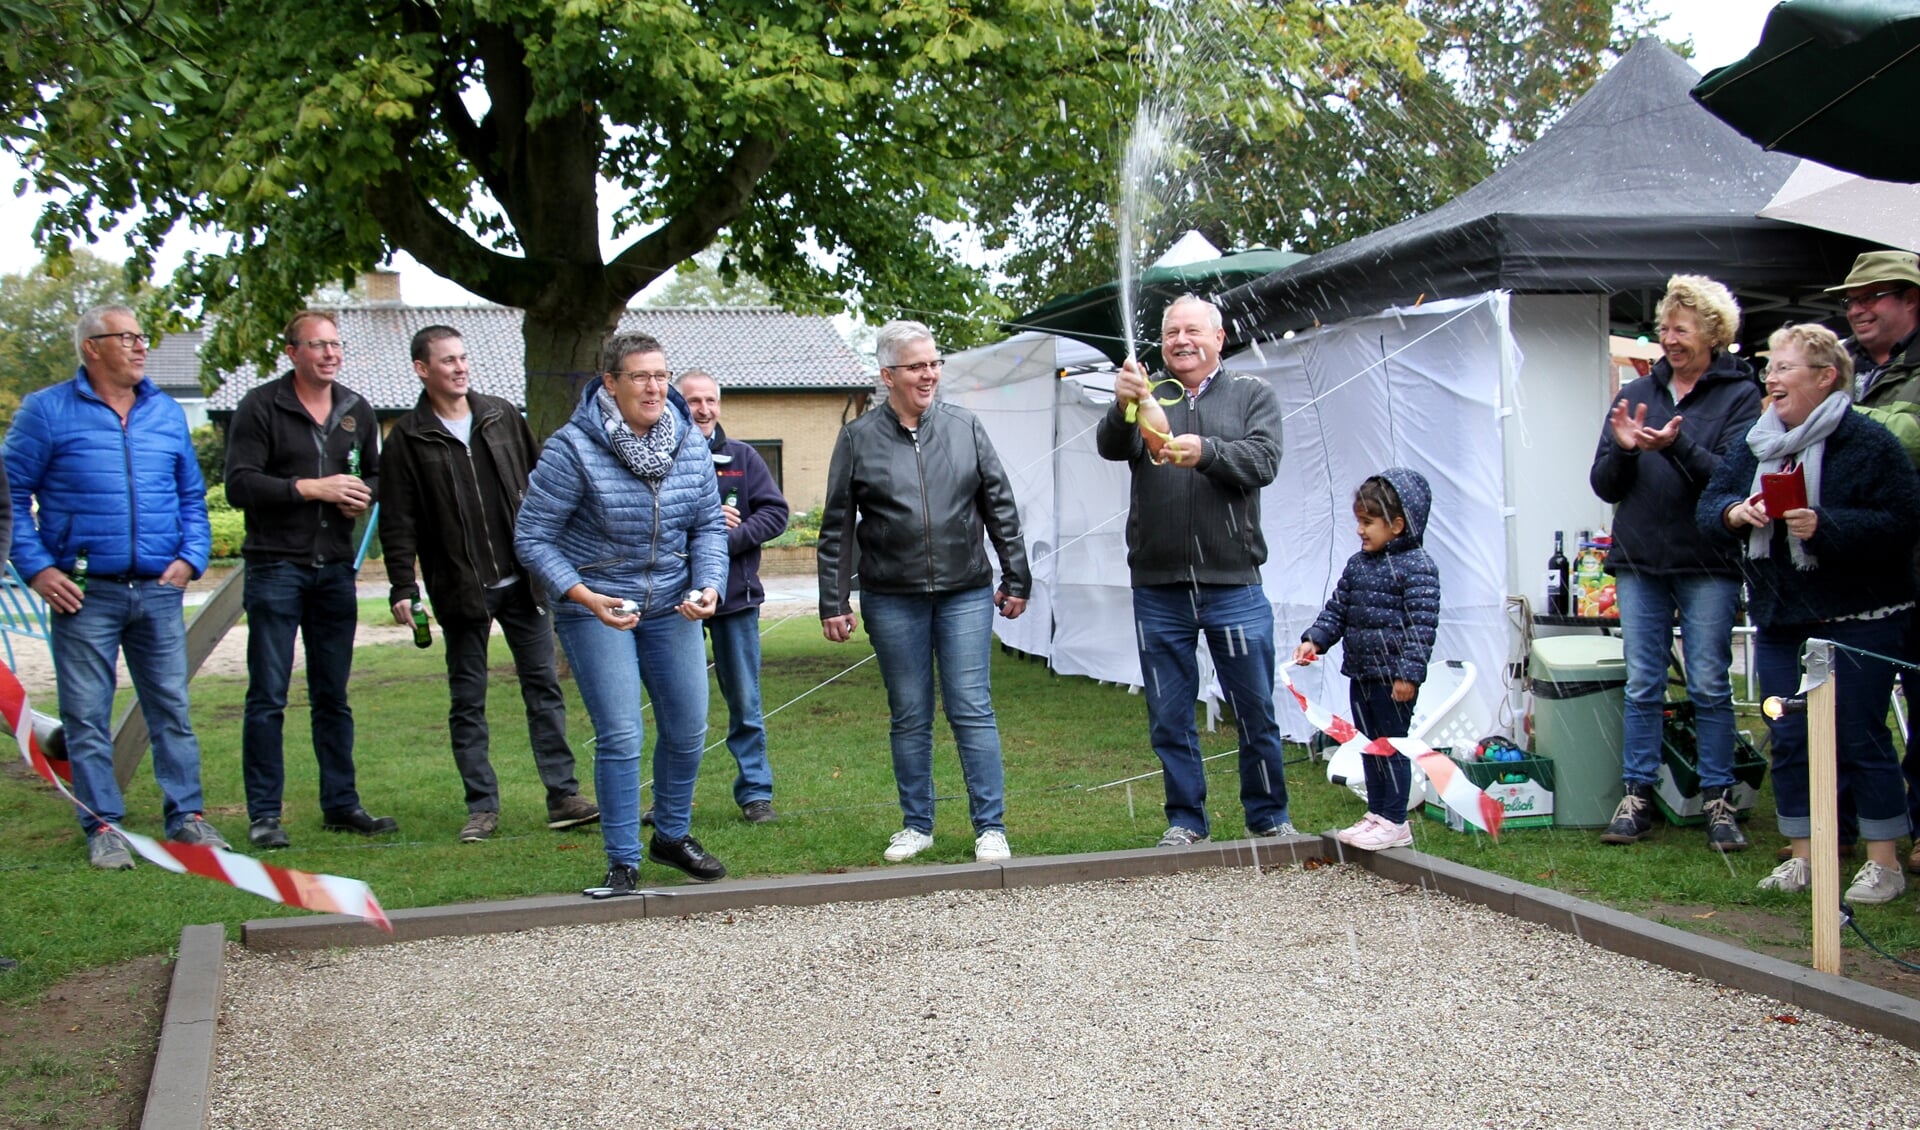 De jeu de boules baan aan de Russerweg wordt geopend tijdens burendag. Foto: Liesbeth Spaansen